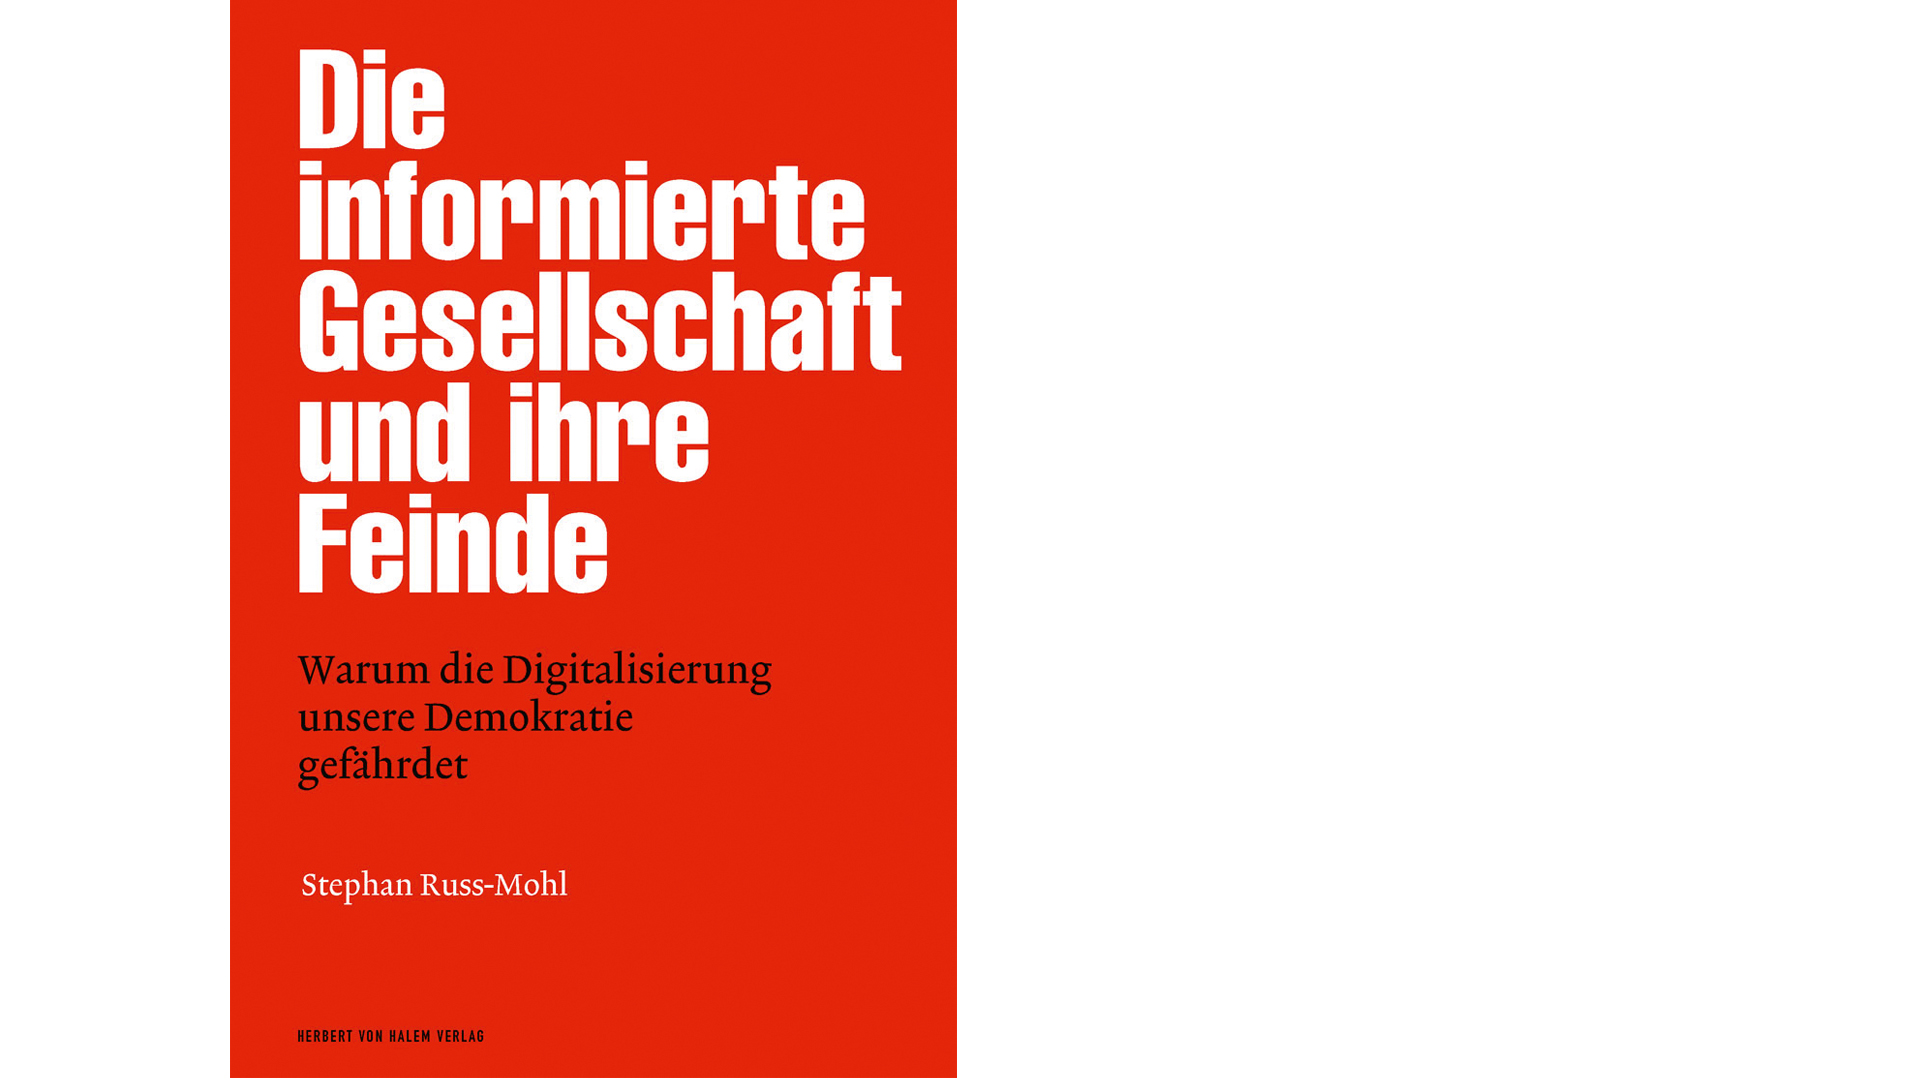 „Die informierte Gesellschaft und ihre Feinde. Warum die Digitalisierung unsere Demokratie gefährdet“ erschien 2017 im Herbert von Halem Verlag, 368 Seiten, 23 Euro, ISBN 9783869622743.